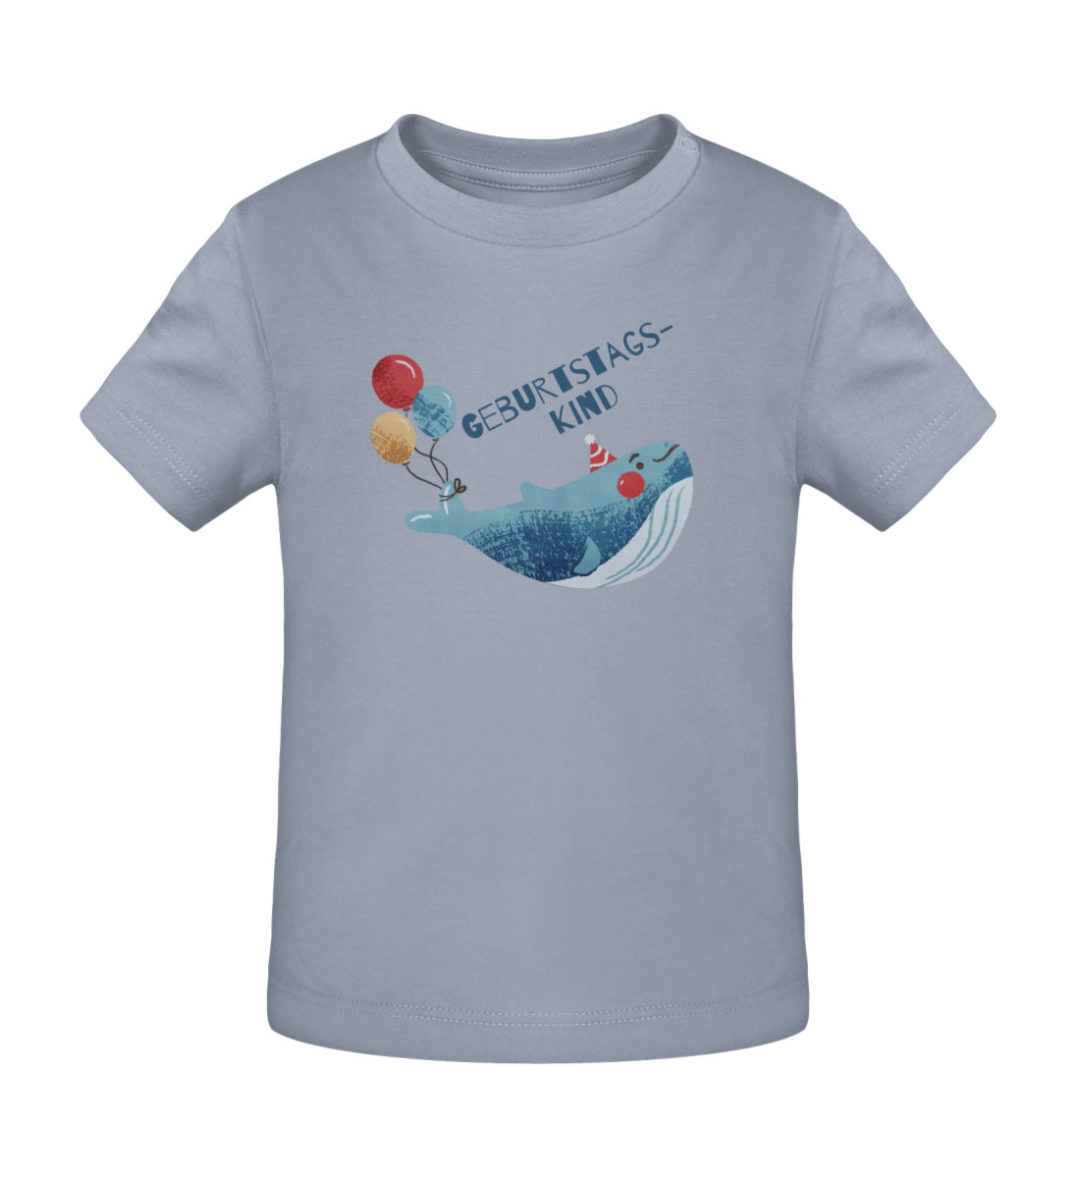 Geburtstagskind - Baby Creator T-Shirt ST/ST-7086